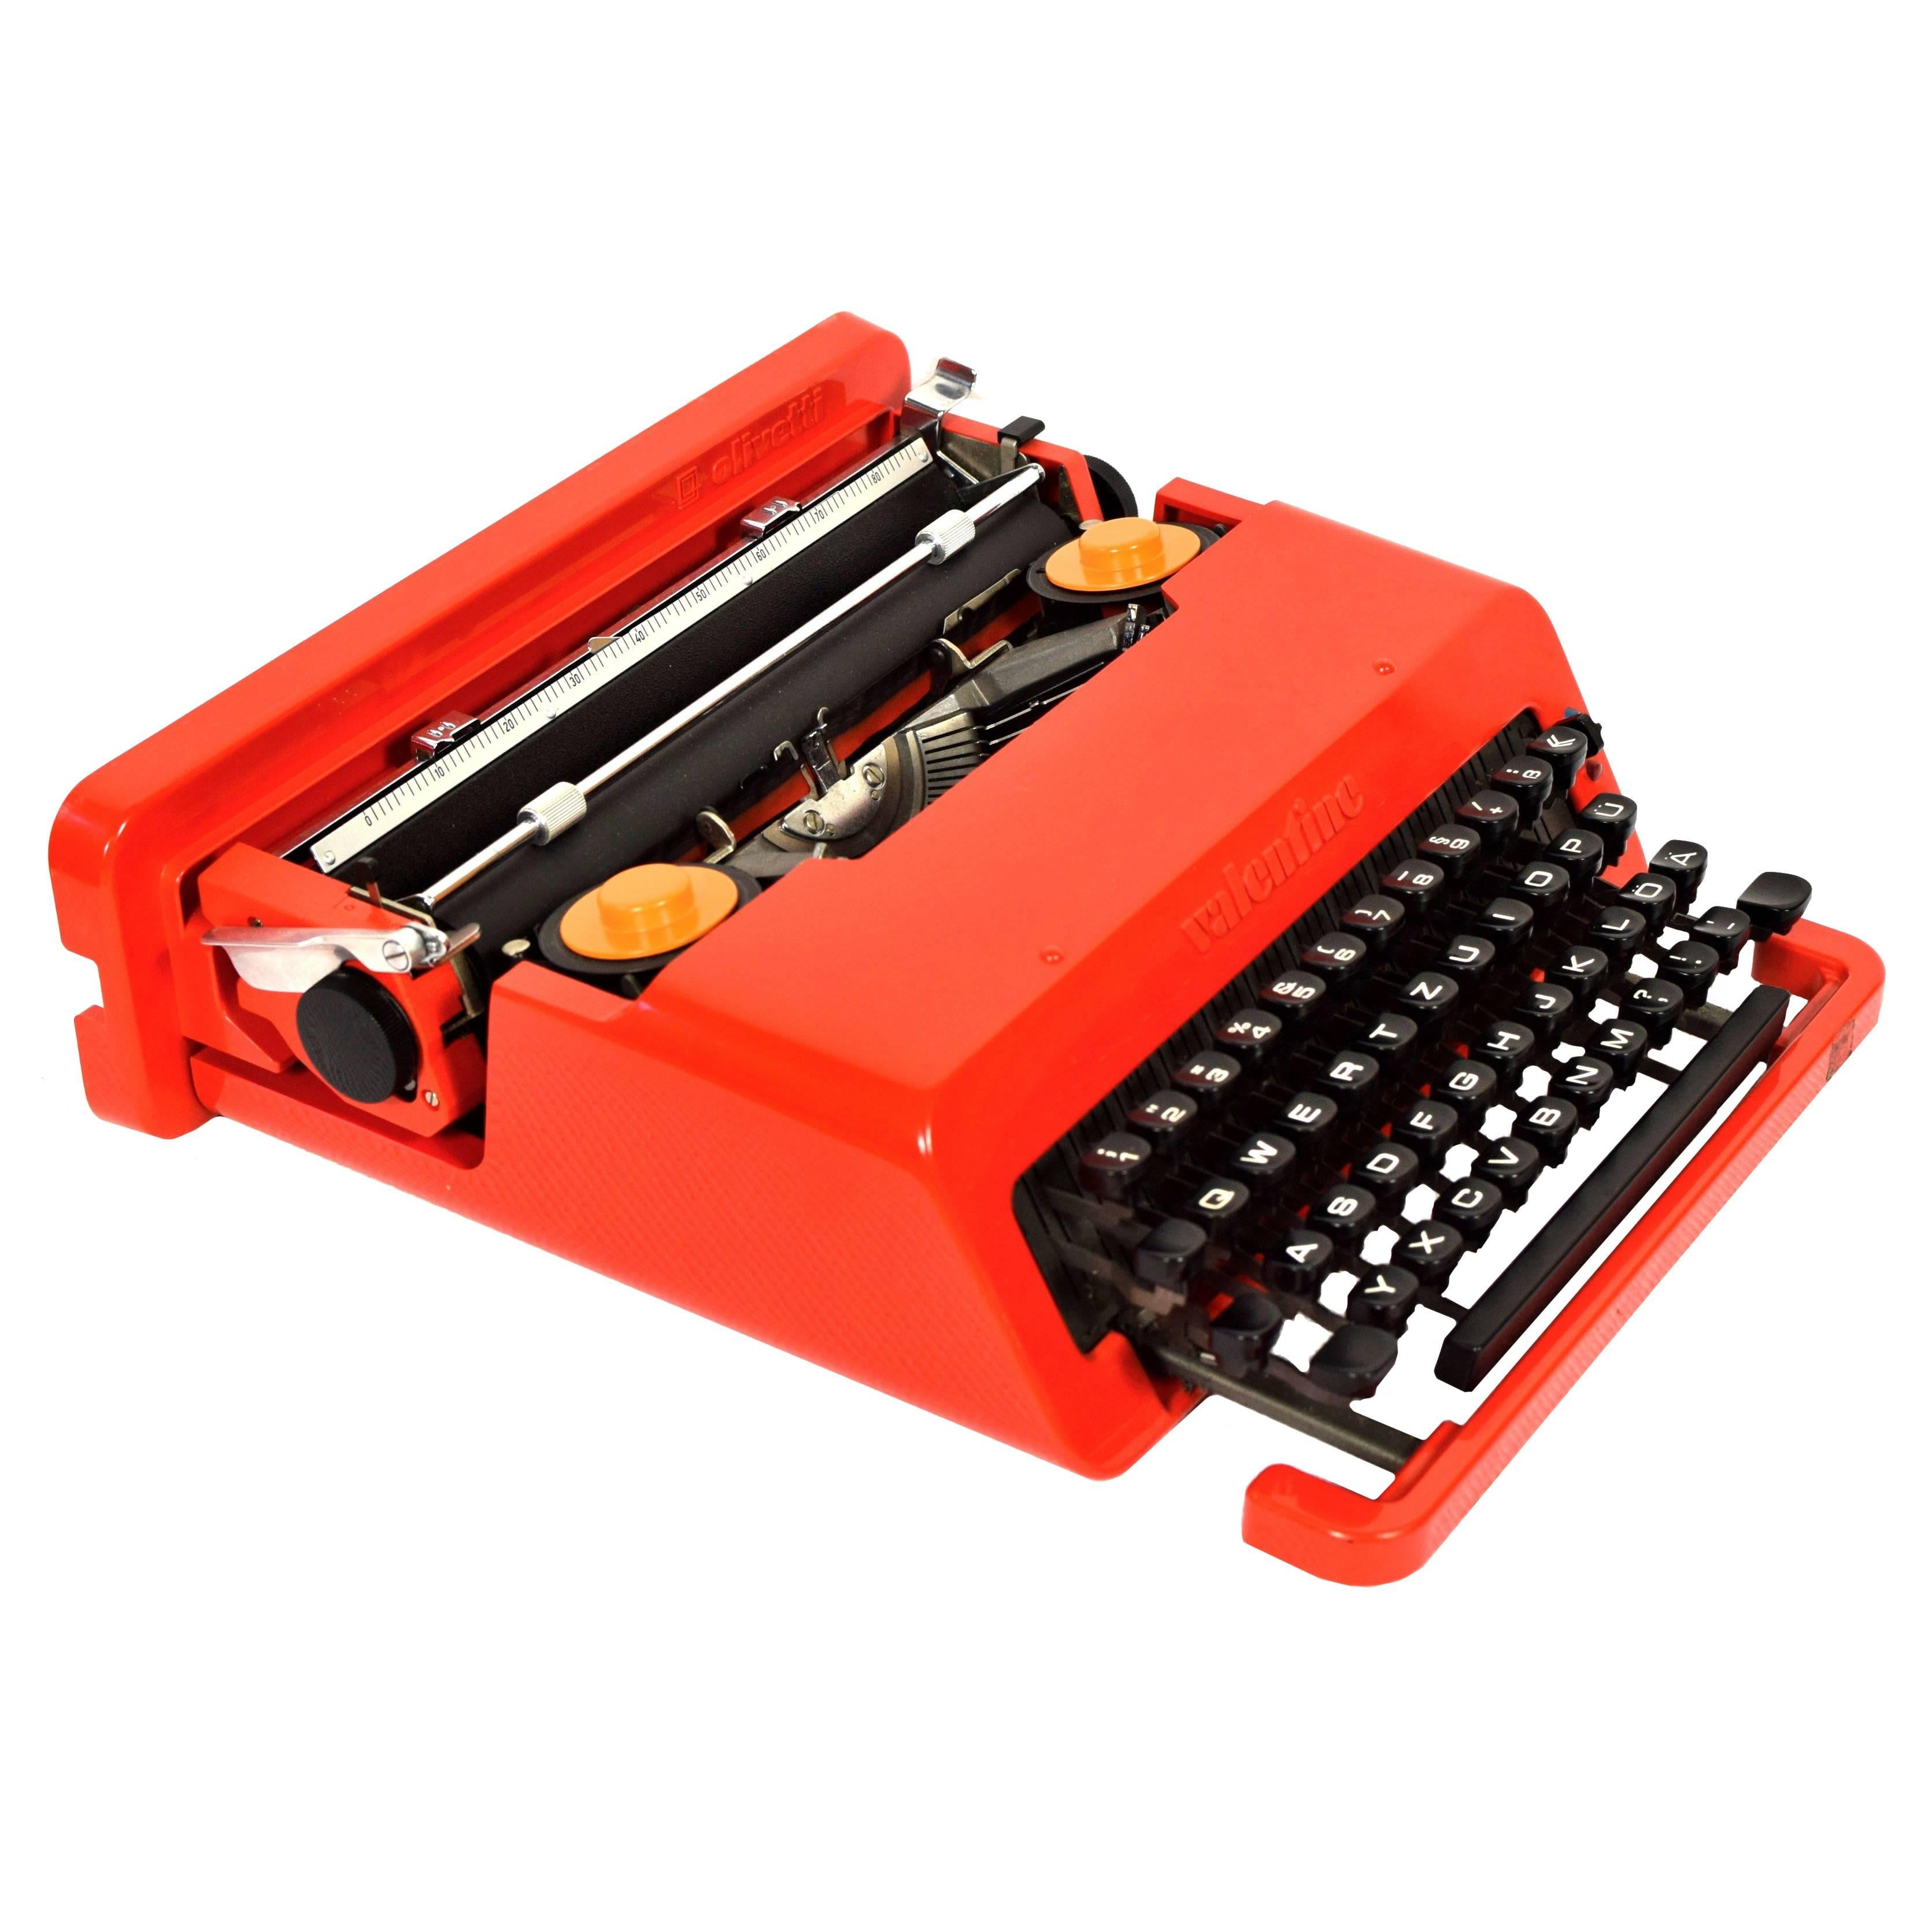 Olivetti "Valentine" Typewriter